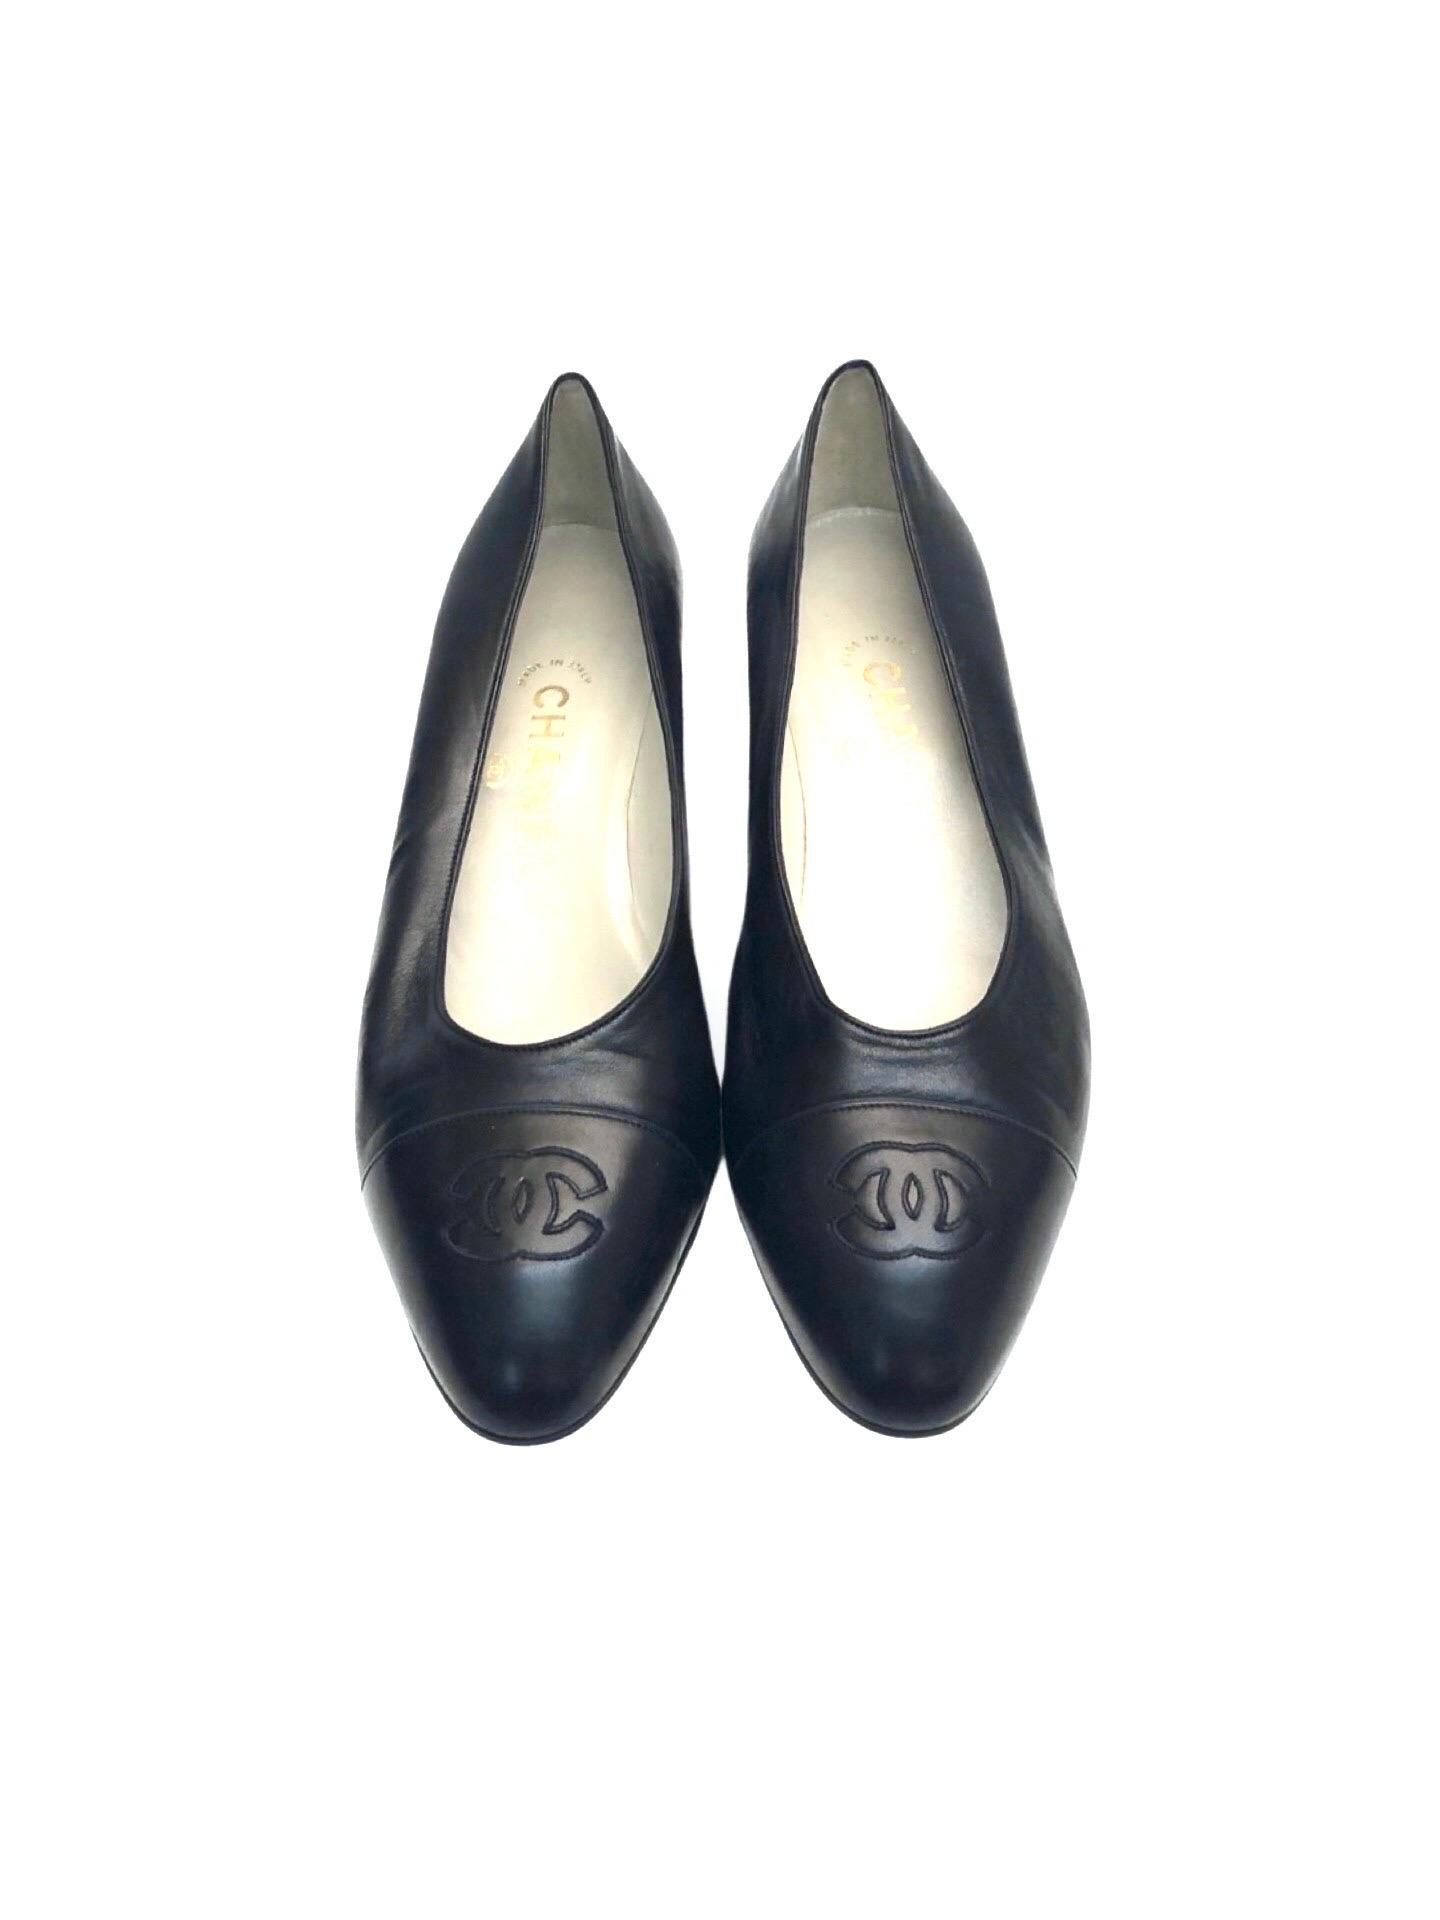 - Chaussures Chanel vintage des années 90 en cuir d'agneau noir. 

- Logo 